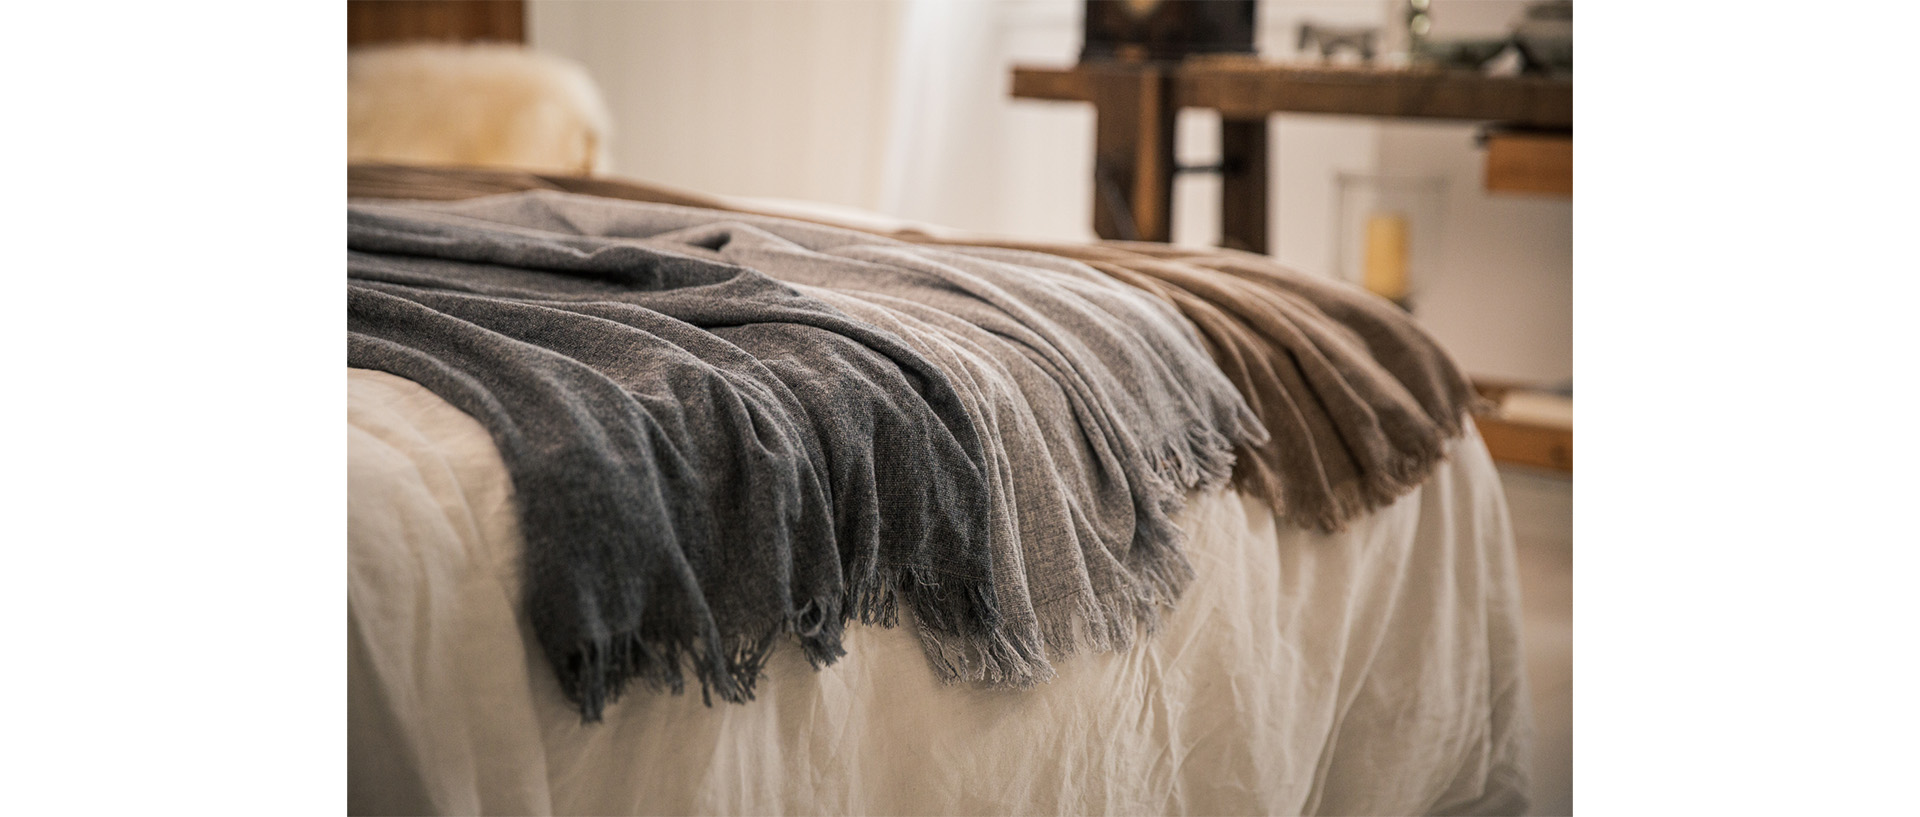 Couverture lit en laine & coton - Djoloo